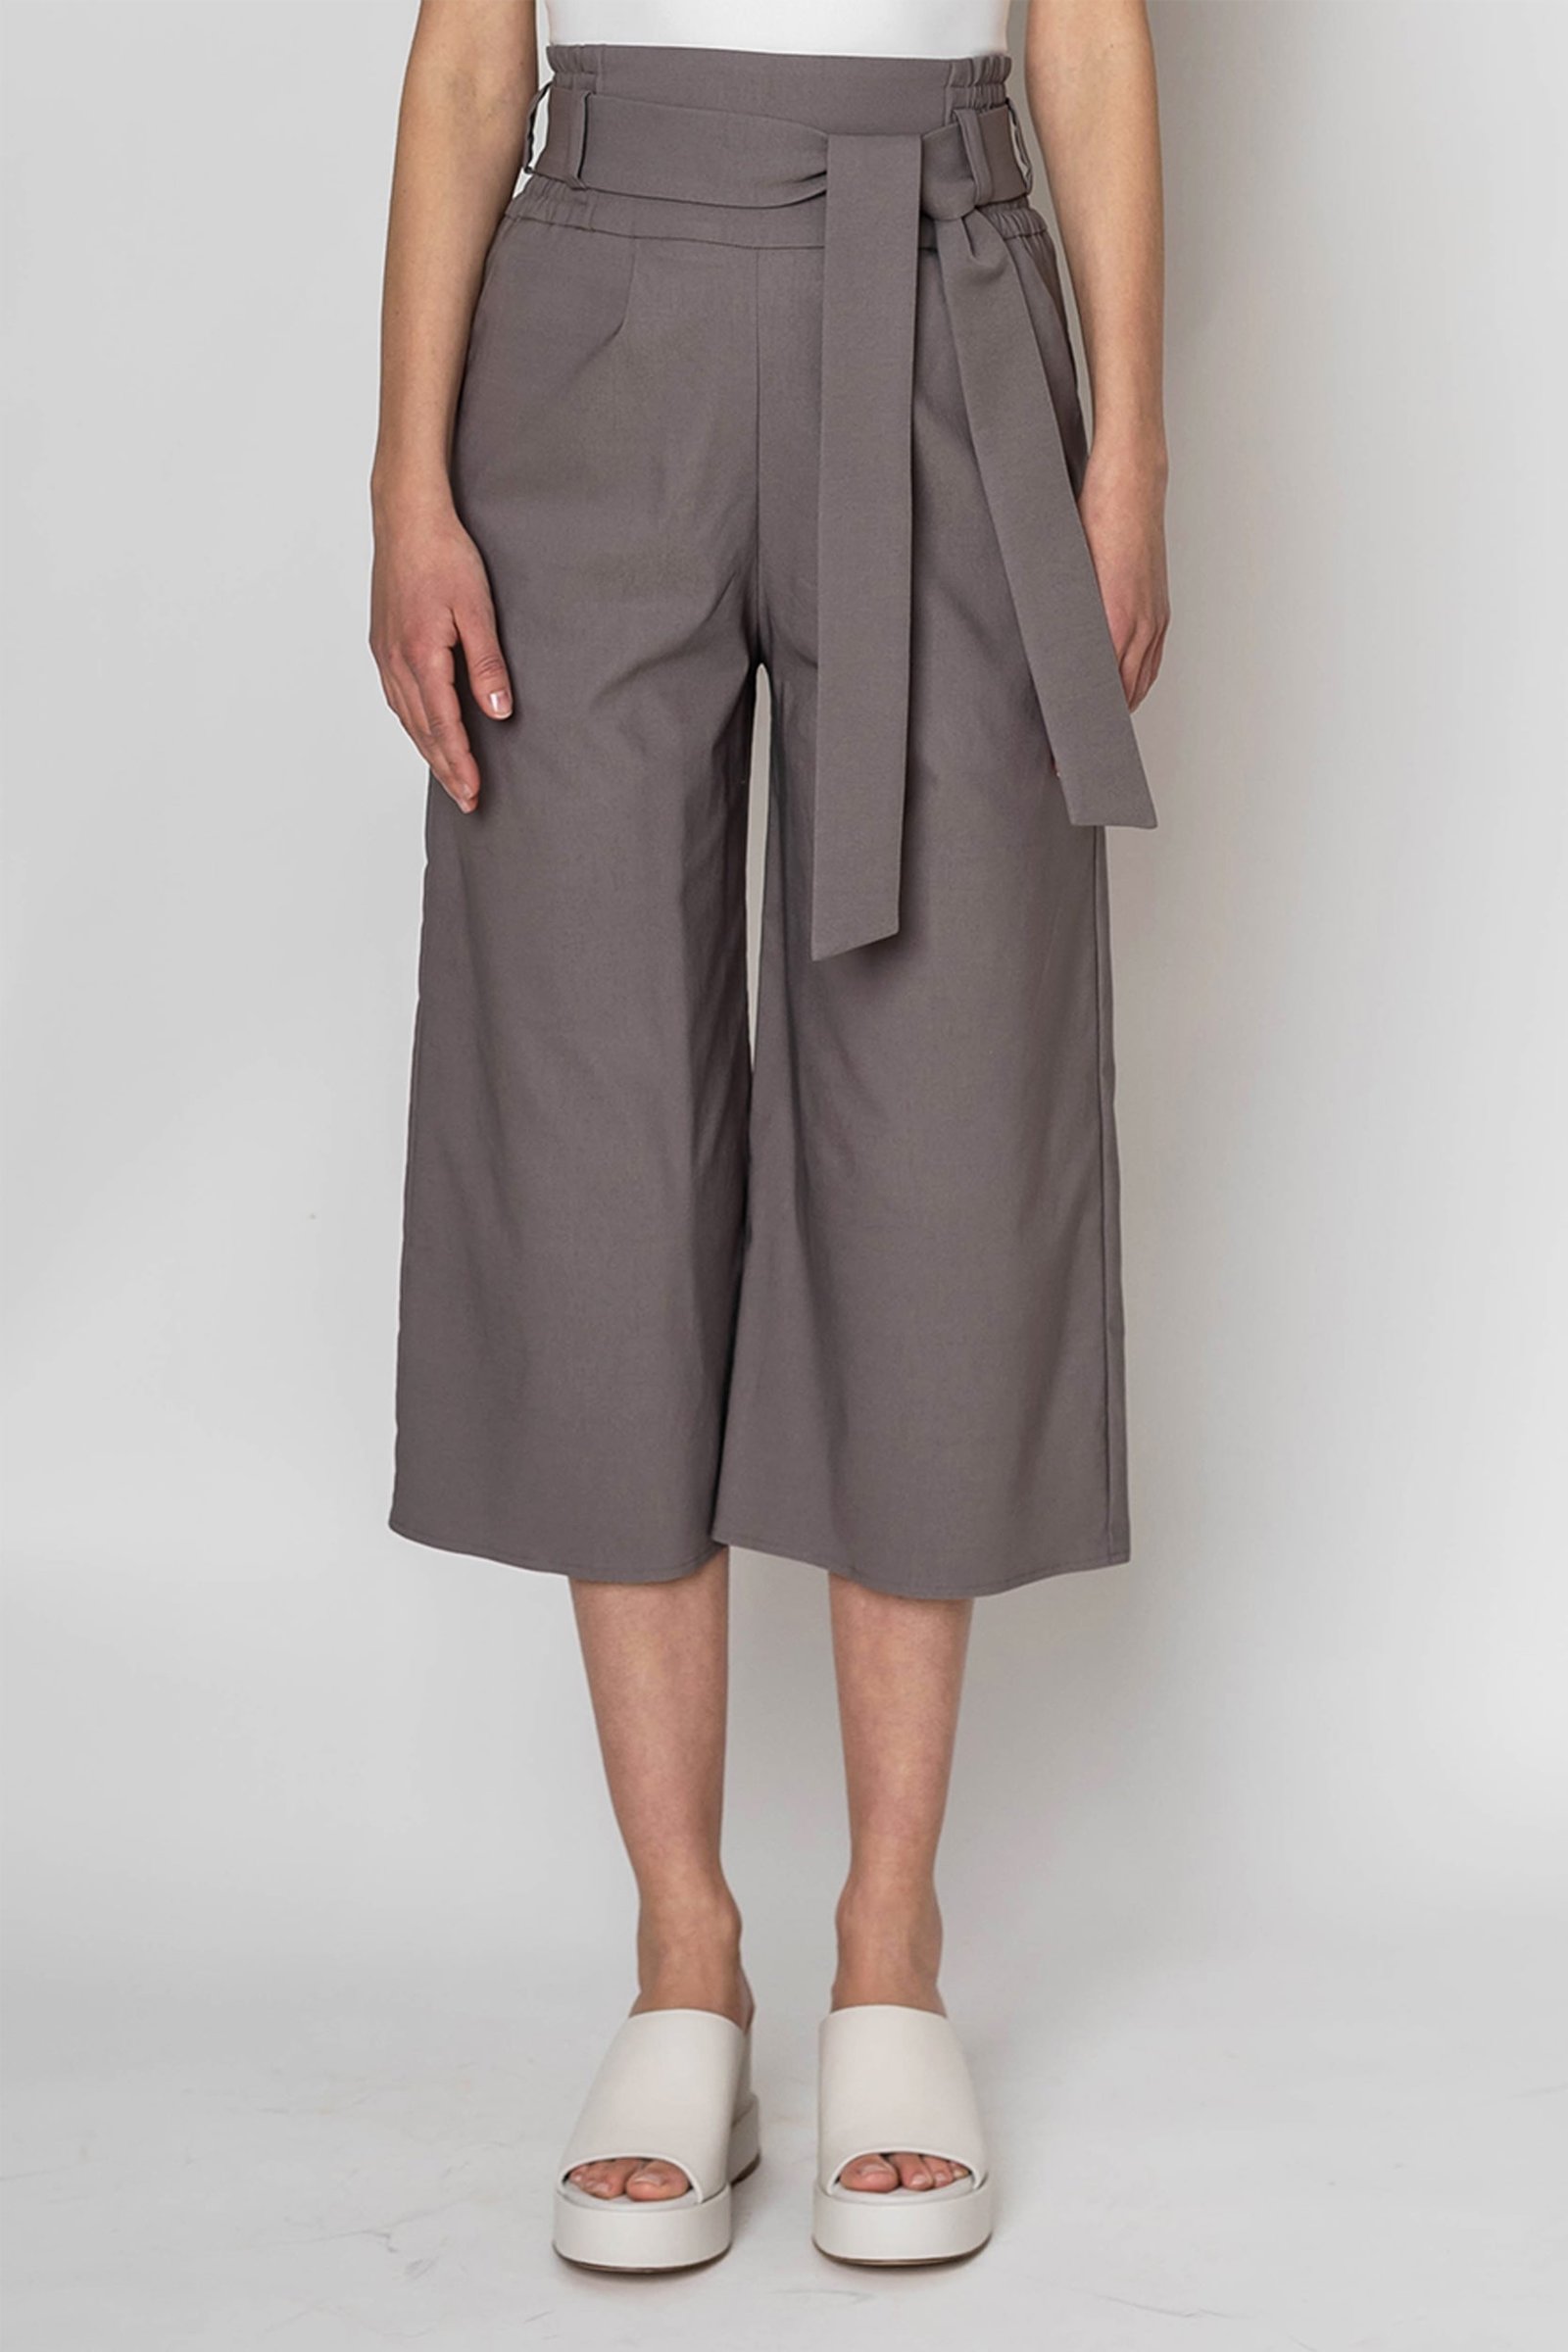 lola culottes pants - CALLISTI Fashion